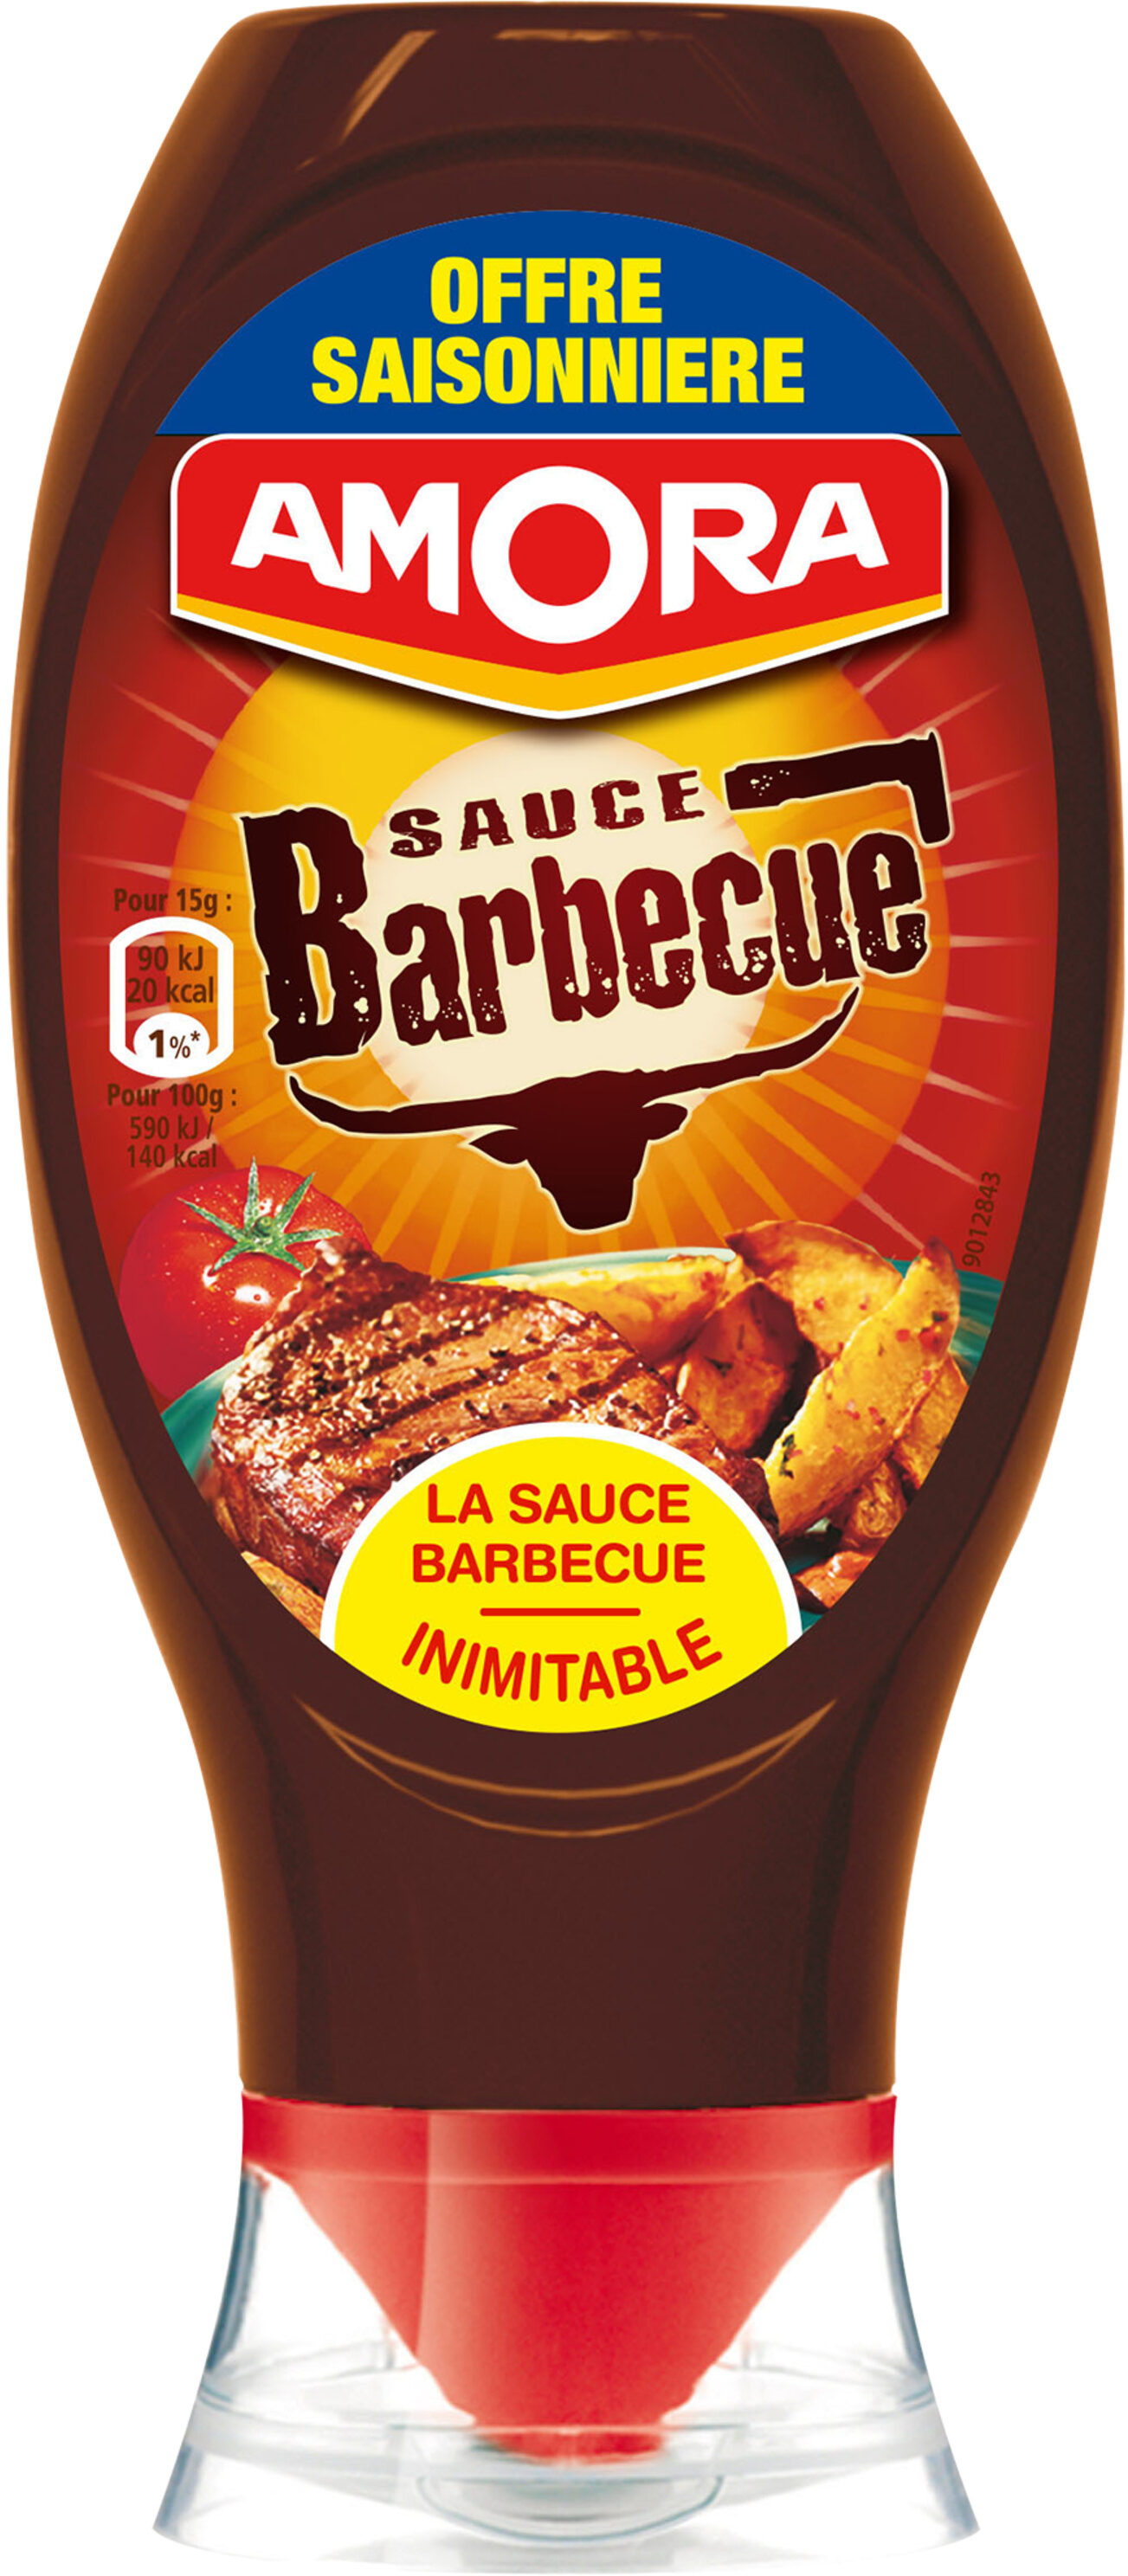 Amora Sauce Barbecue - Offre Saisonnière - 490g - Produit